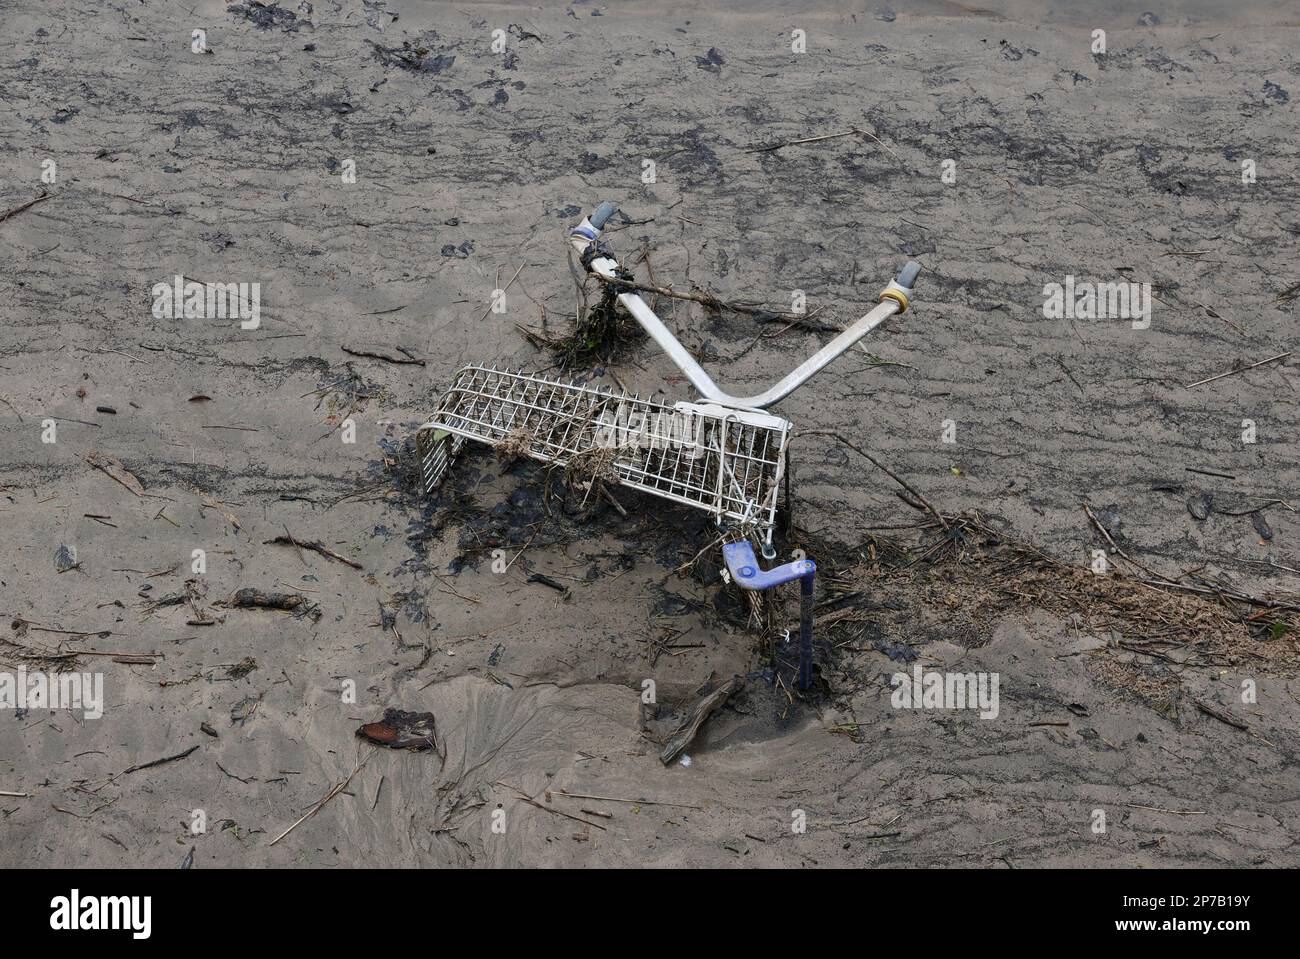 Trolley de supermarché vidé dans la boue. Estuaire de Torridge. Bideford. Devon. Angleterre. ROYAUME-UNI Banque D'Images